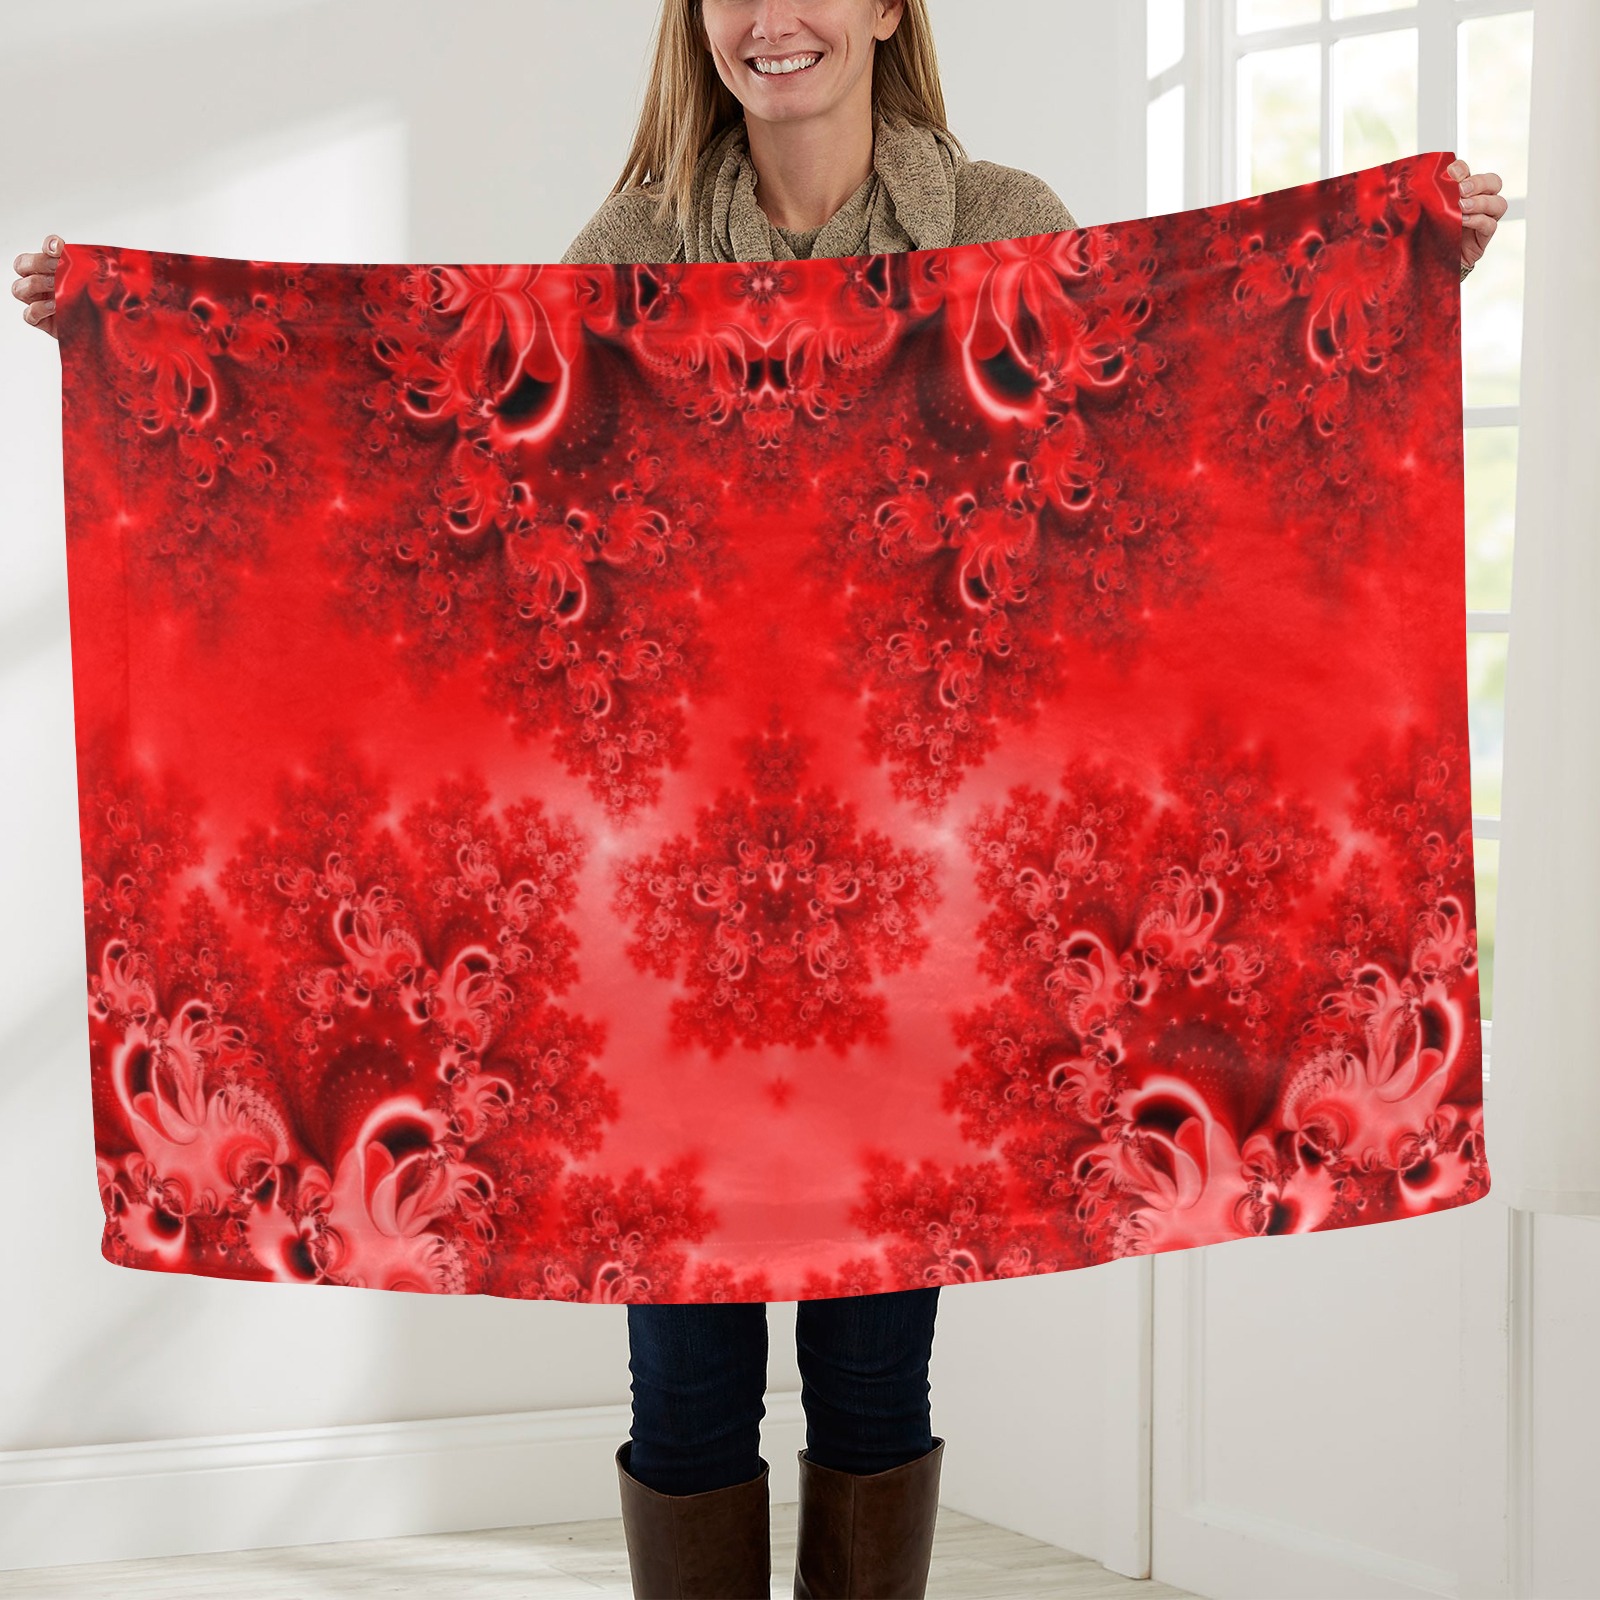 Fiery Red Rose Garden Frost Fractal Baby Blanket 40"x50"